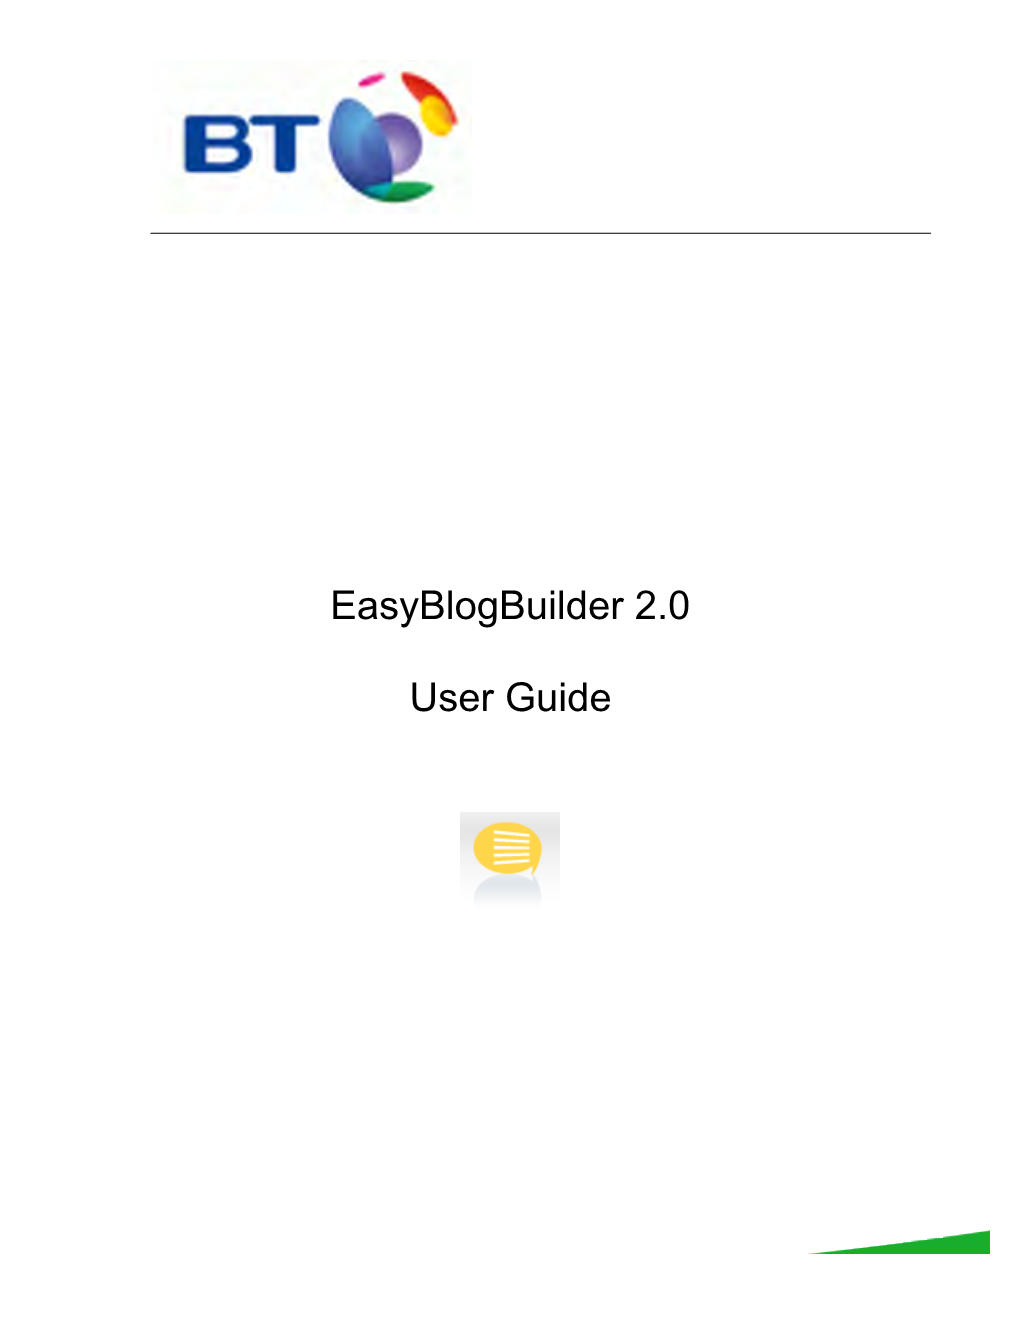 Easyblogbuilder 2.0 User Guide